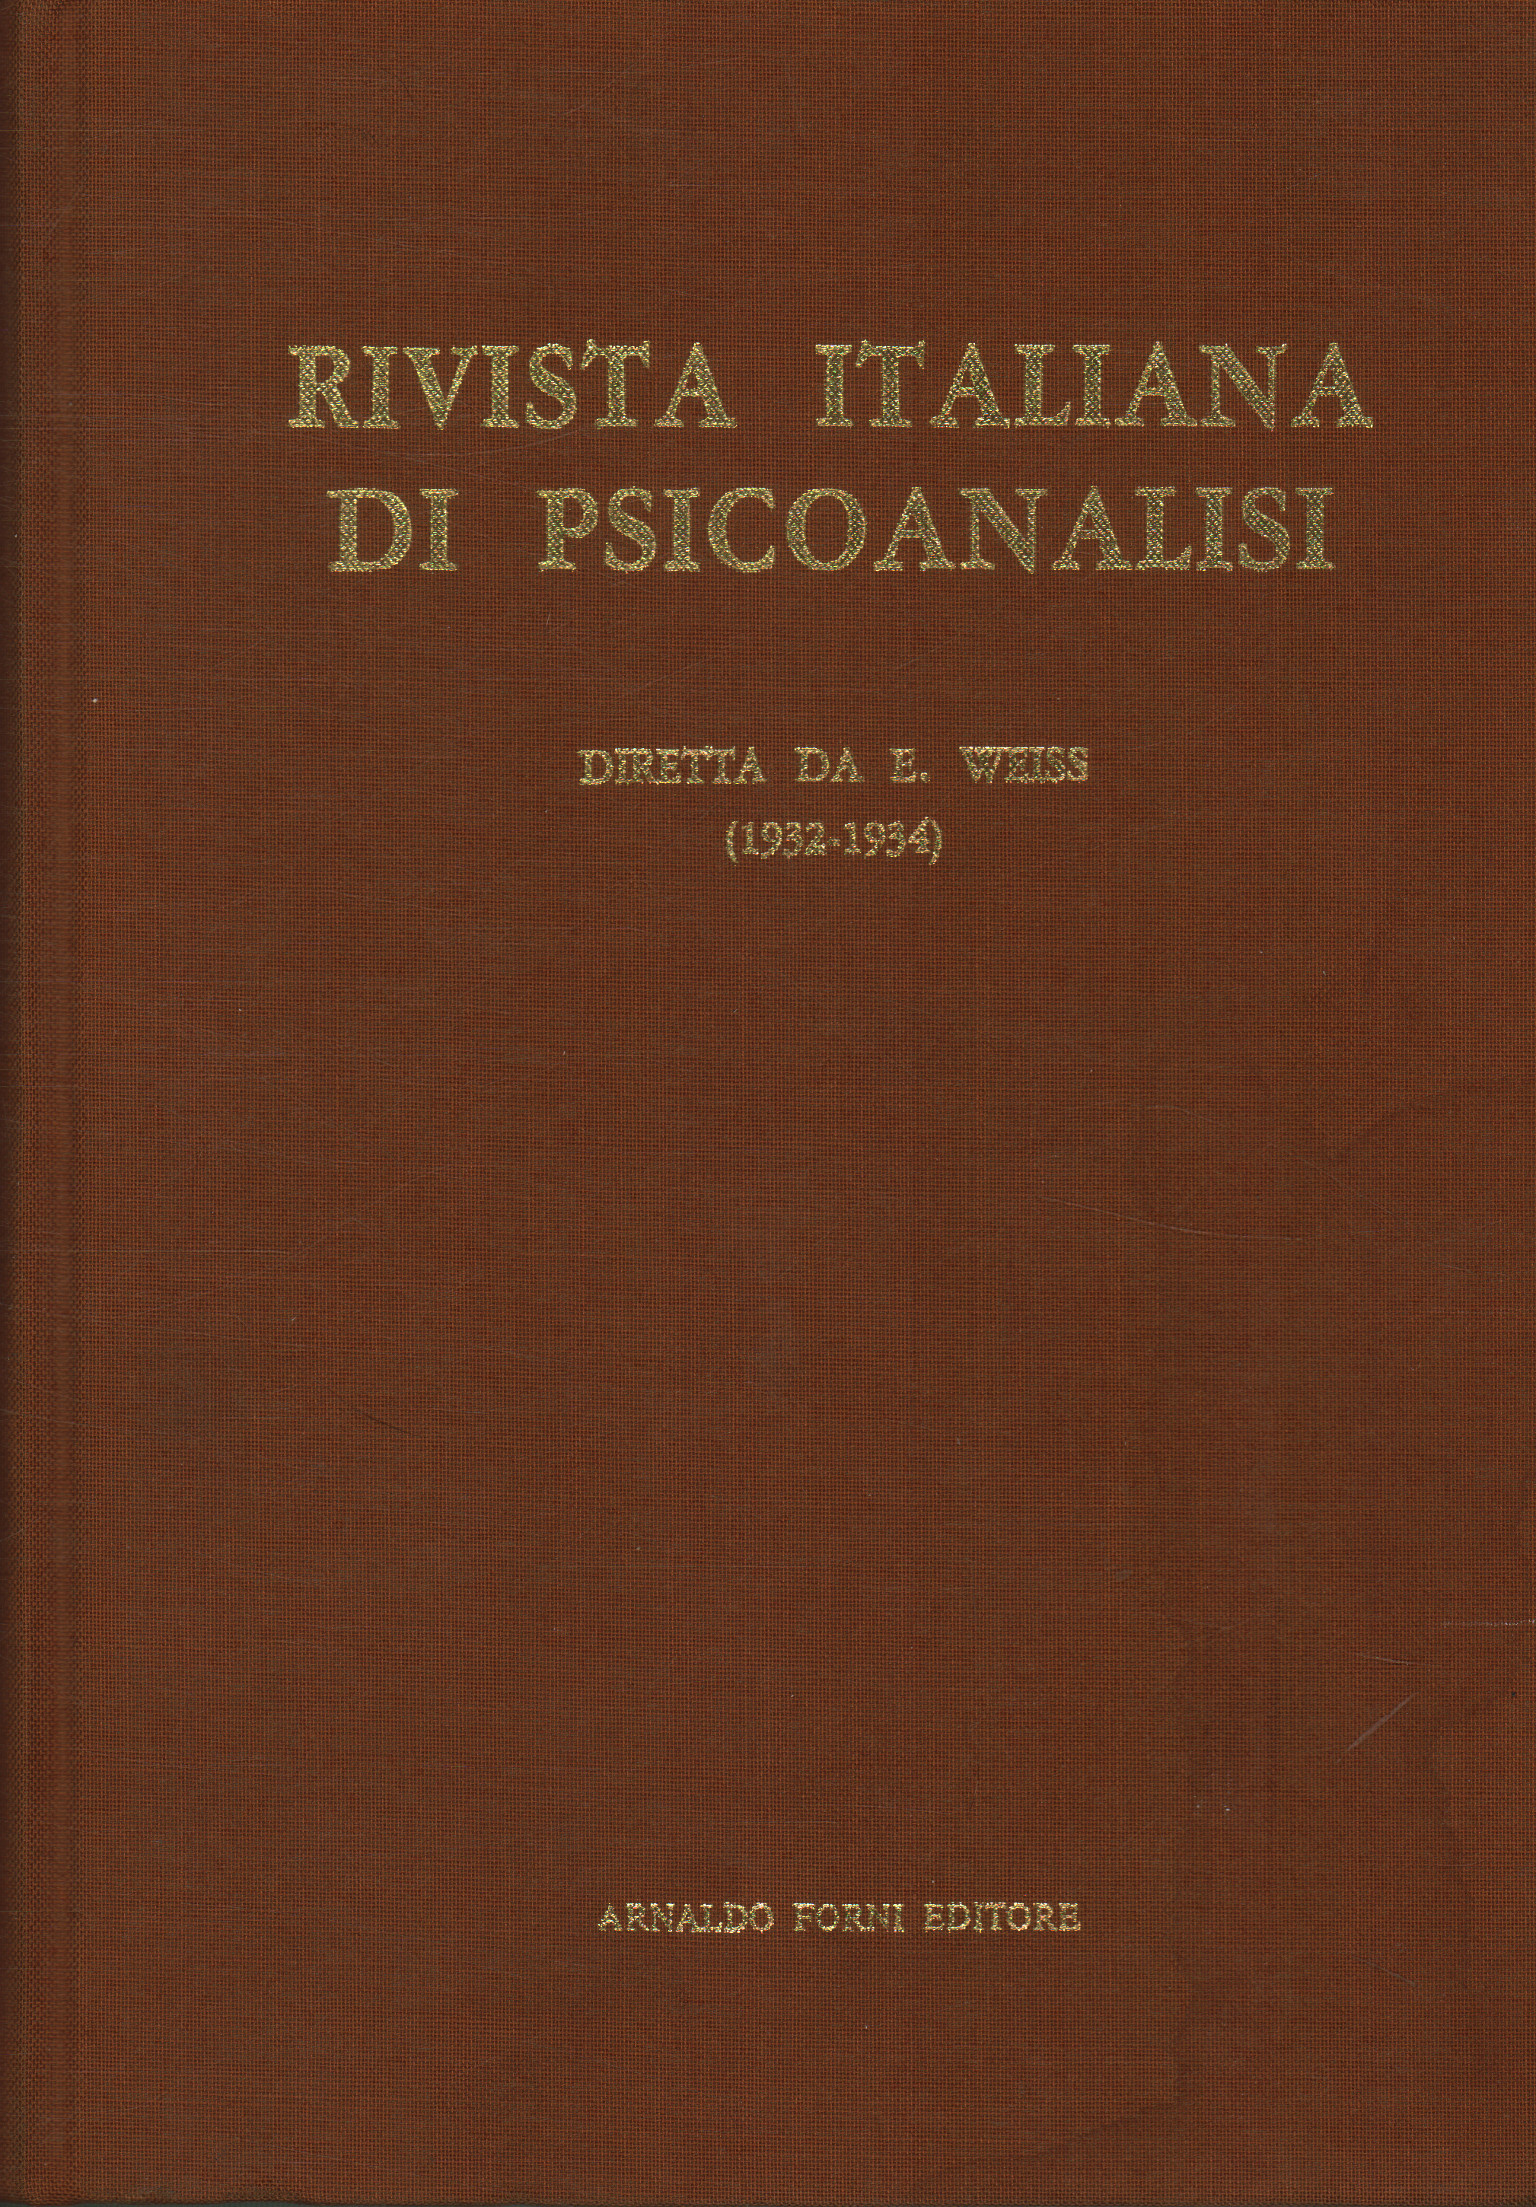 Italian journal of psychoanalysis